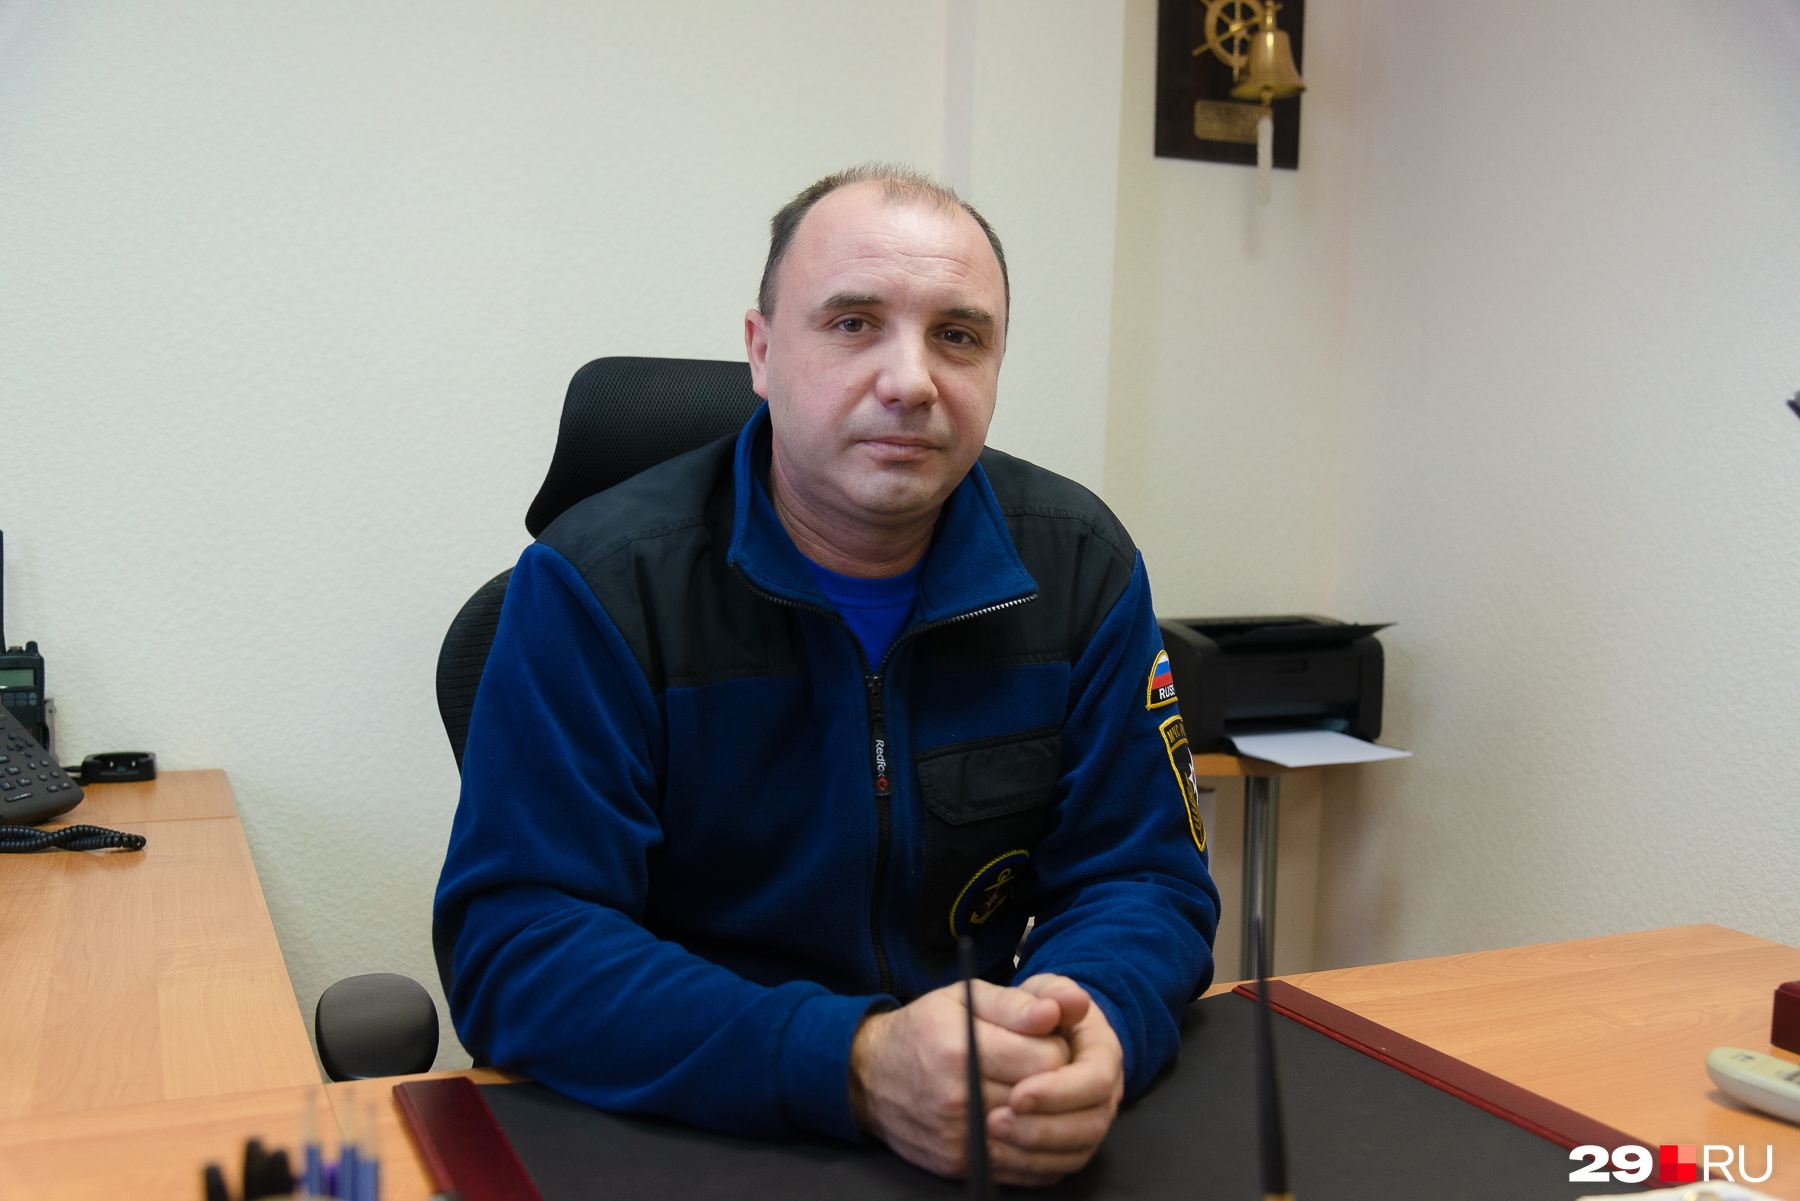 Заместитель руководителя главного управления МЧС Архангельской области Никита Горяев говорит, что осенью легко выходят из строя двигатели лодок